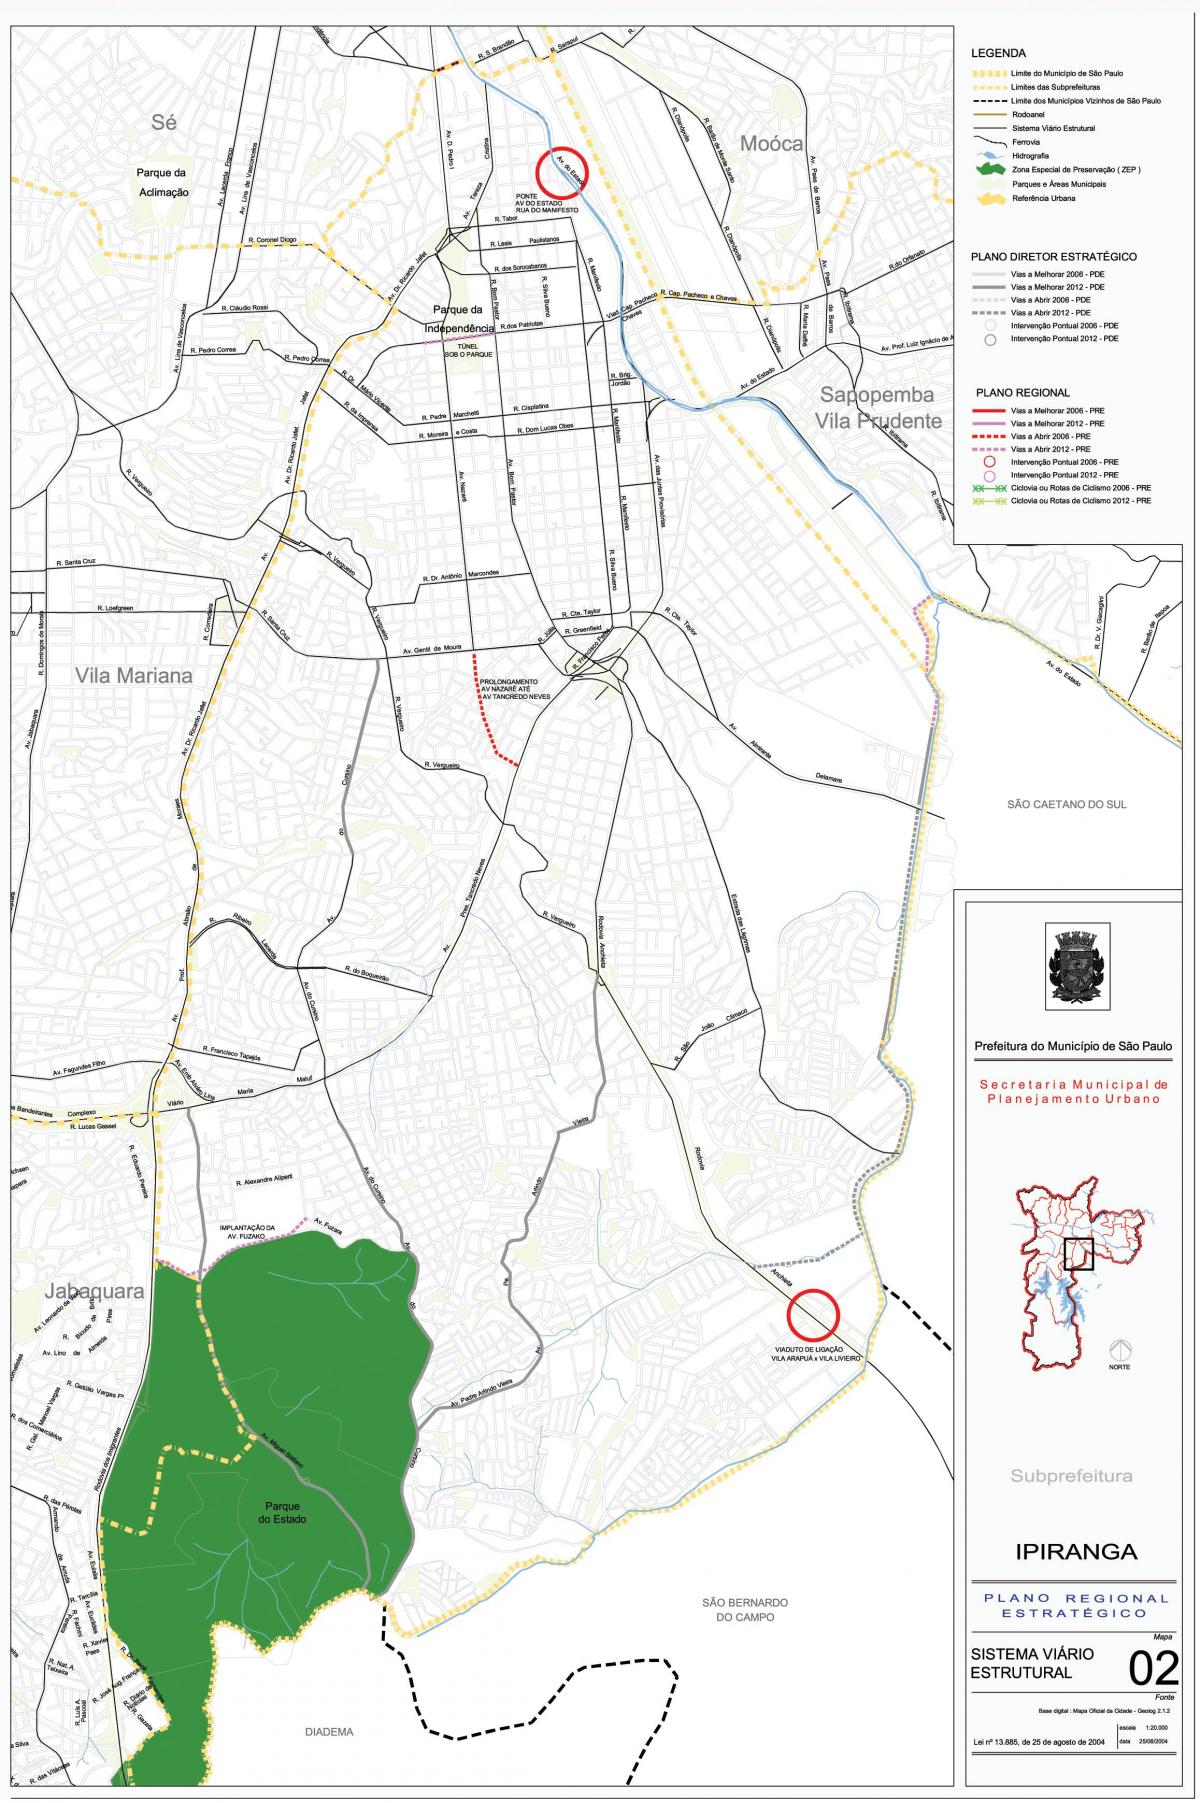 Zemljevid Ipiranga Sao Paulo - Ceste